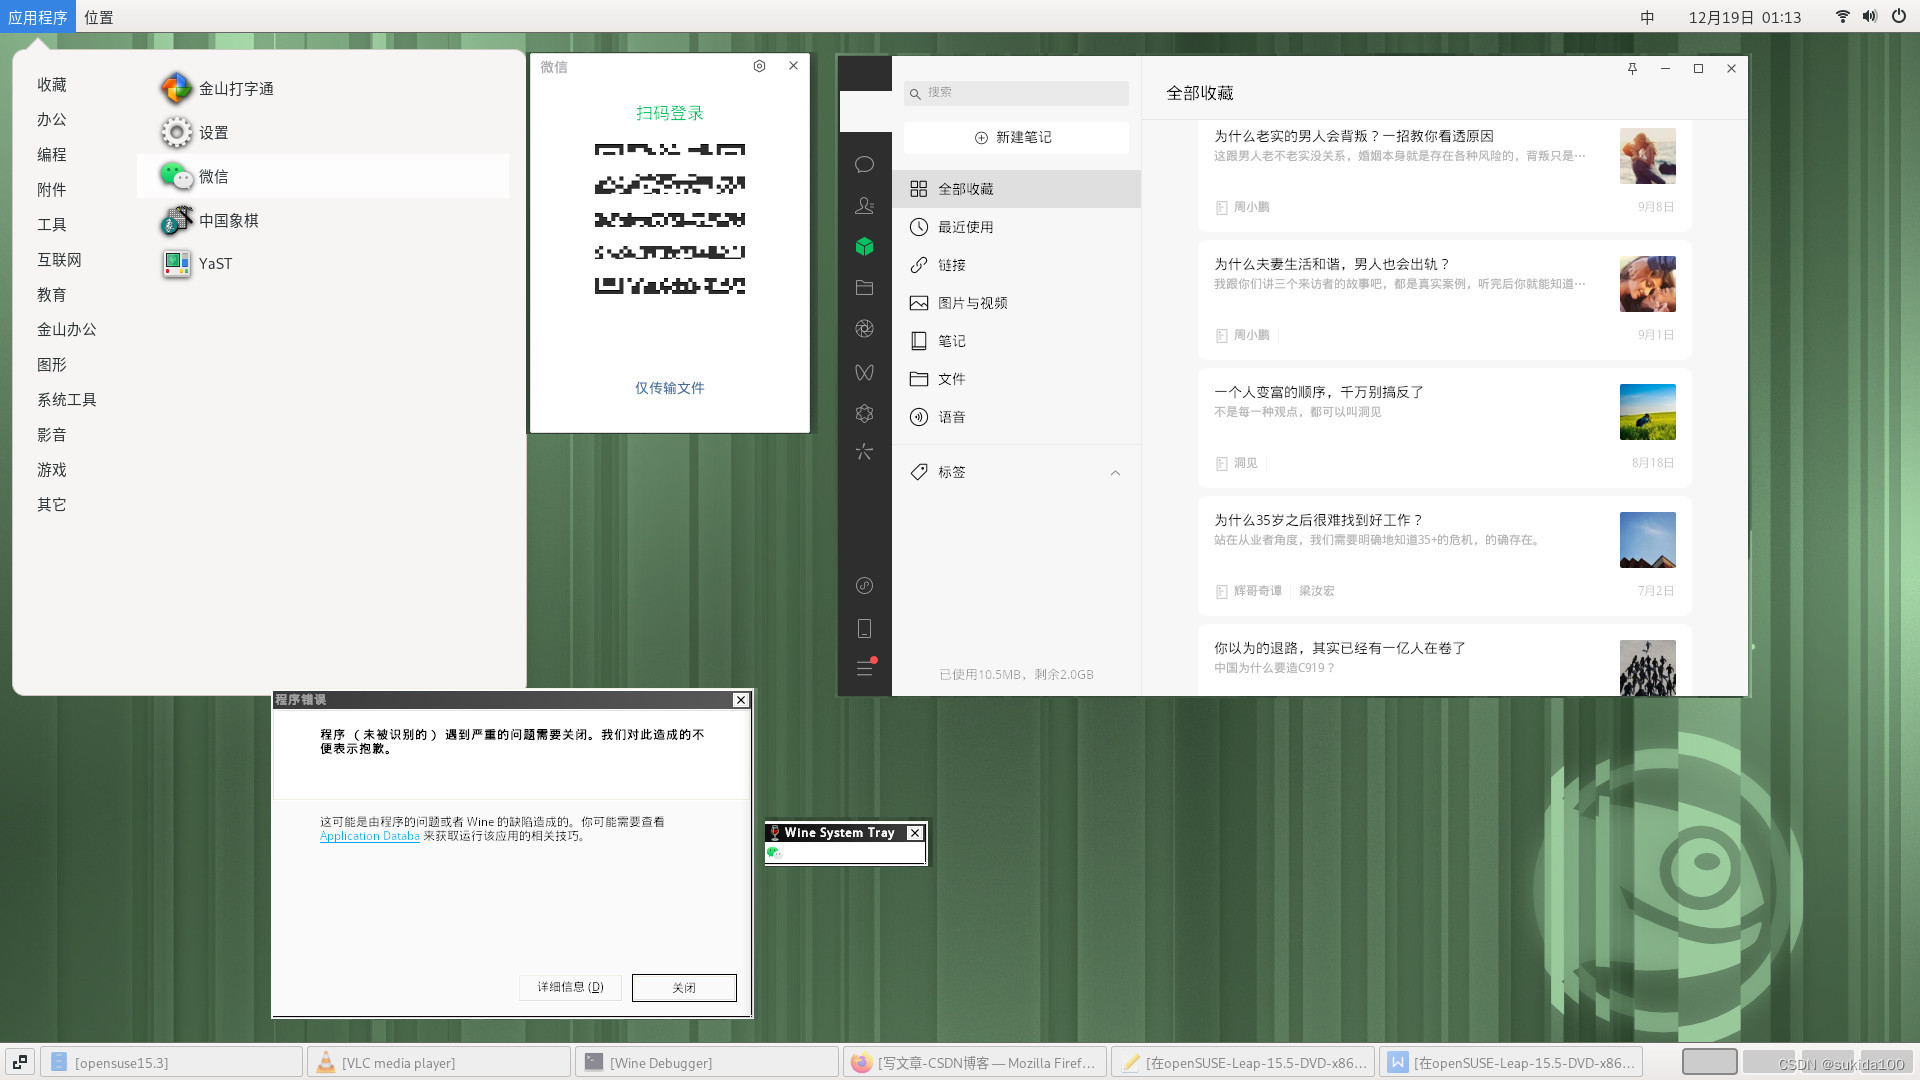 在openSUSE-Leap-15.5-DVD-x86_64中使用deepin-wine-6.0.0.62再使用微信3.9.5